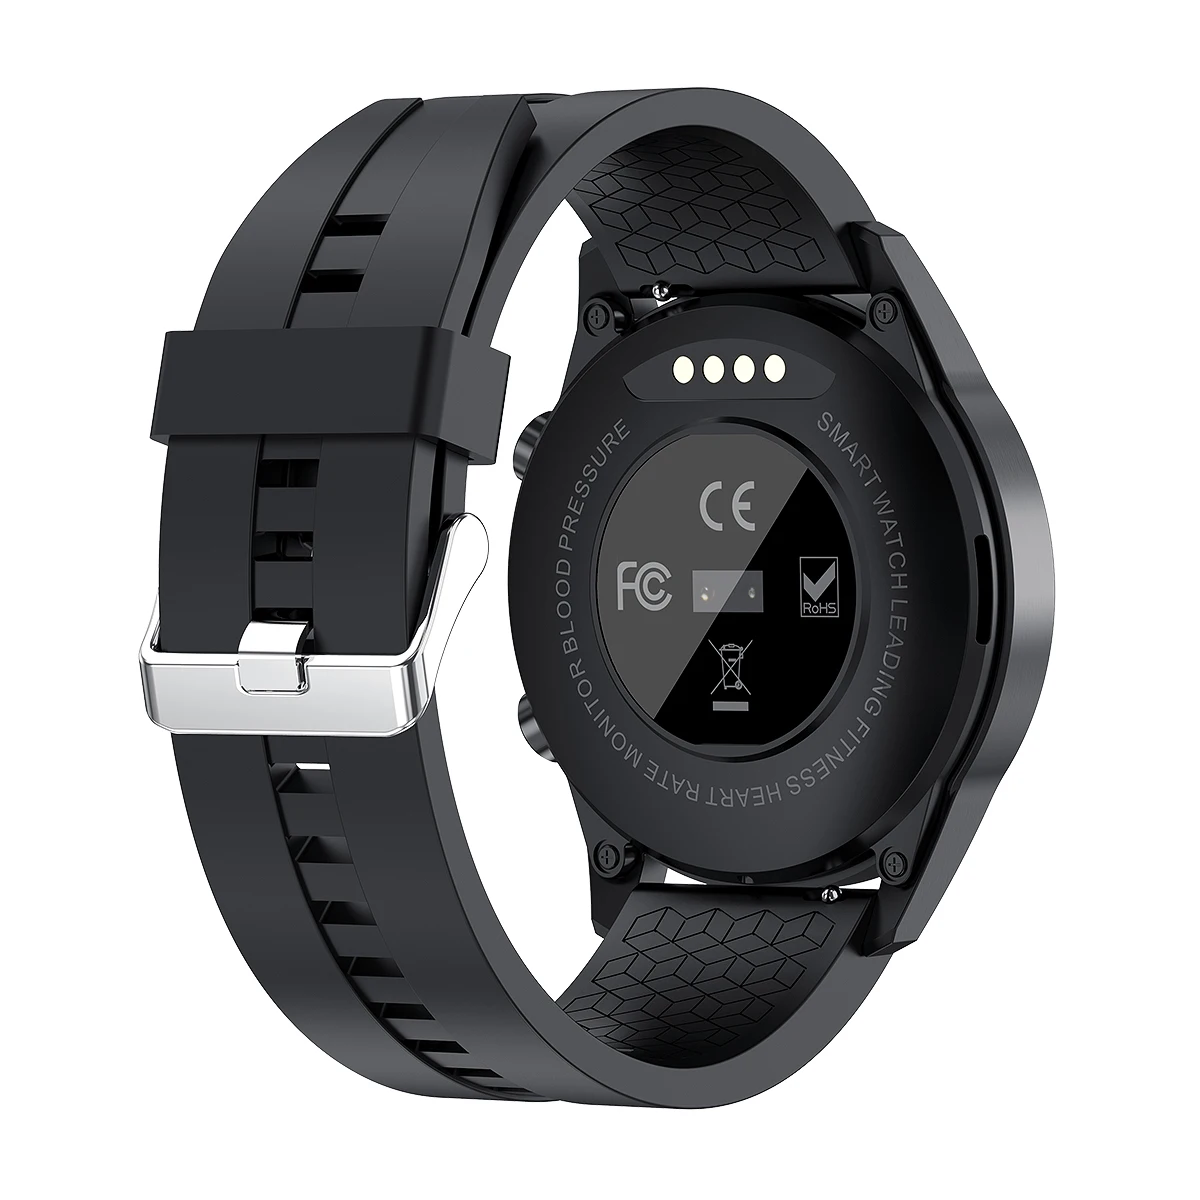 שעון חכם умные часы Bluetooth שיחה Smartwatch גברים, נשים, ספורט כושר צמיד רלו שעון עבור אנדרואיד אפל Xiaomi Huawei - 3